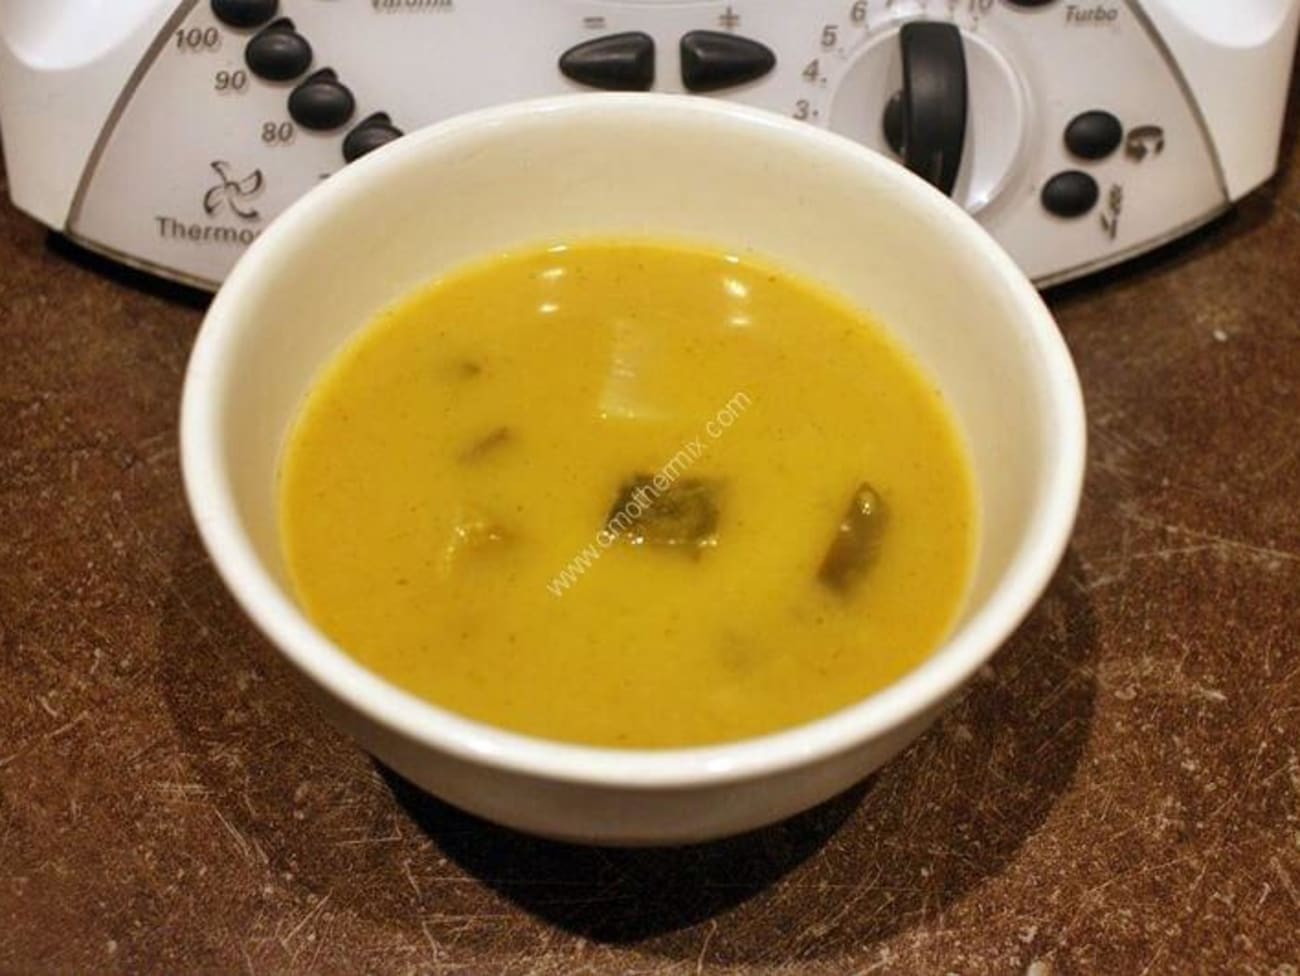 Soupe poireaux, pommes de terre thermomix - Recette par omothermix